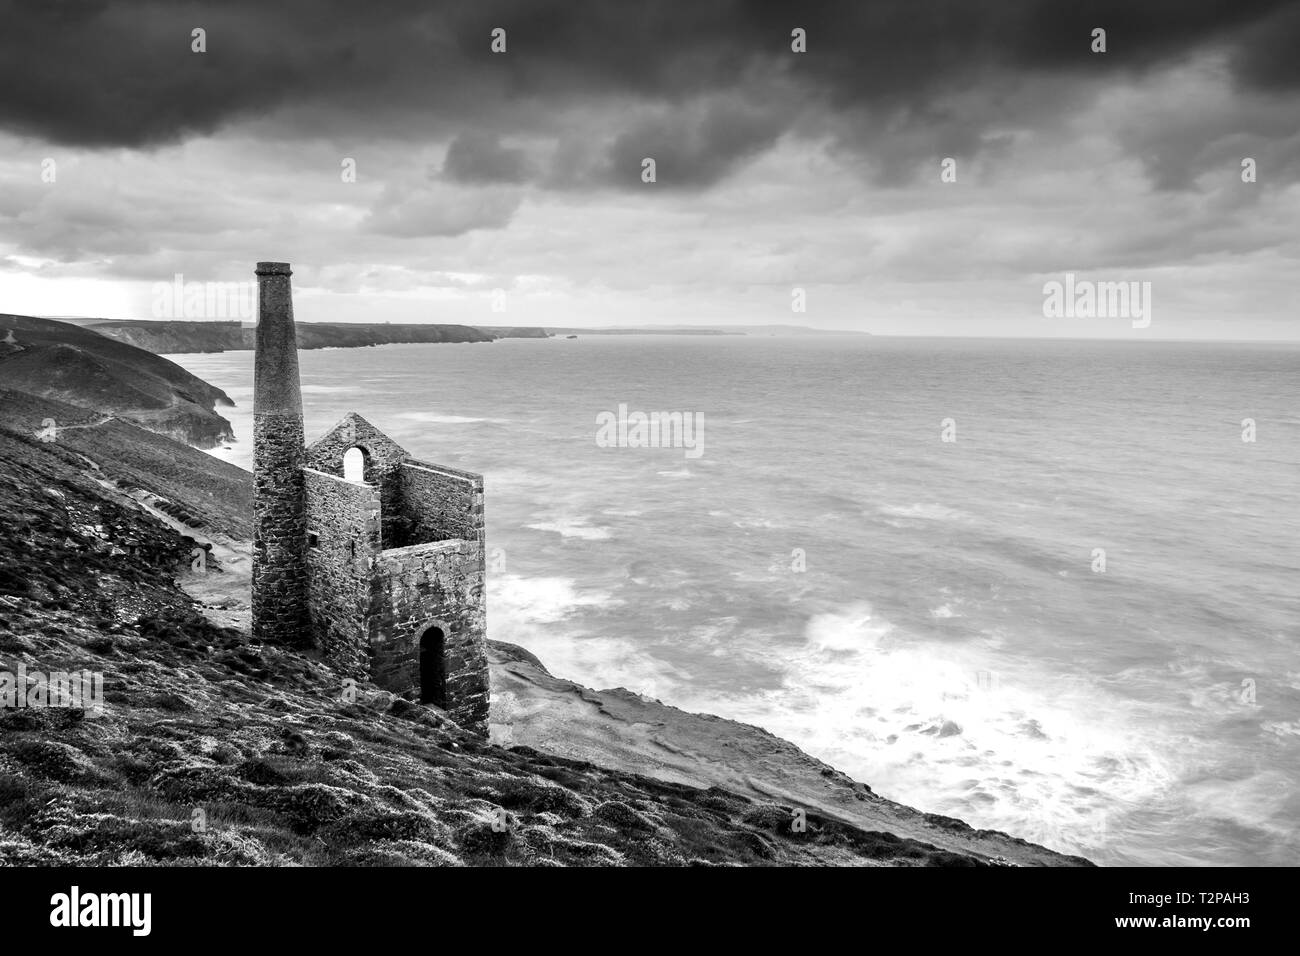 La miniera Towanroath albero a Wheal Coates, sulla St Agnes costa in Cornovaglia, dà questa epica composizione con la bella robusto Cornish Coast Foto Stock